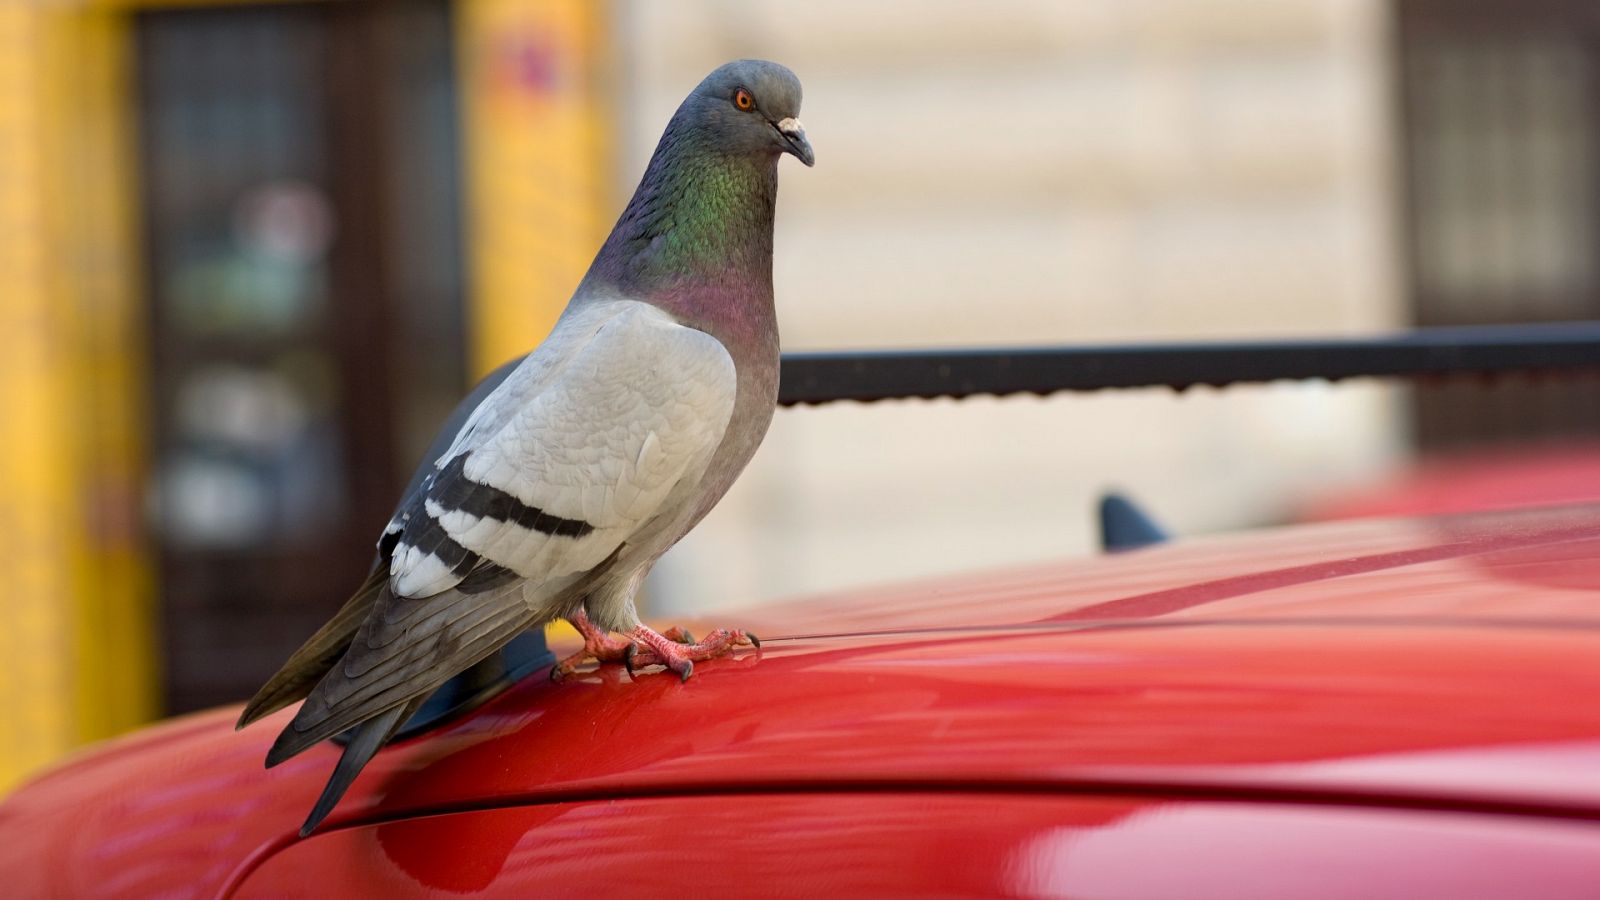 Mapi - ¿En qué coches prefieren hacer caca las palomas?